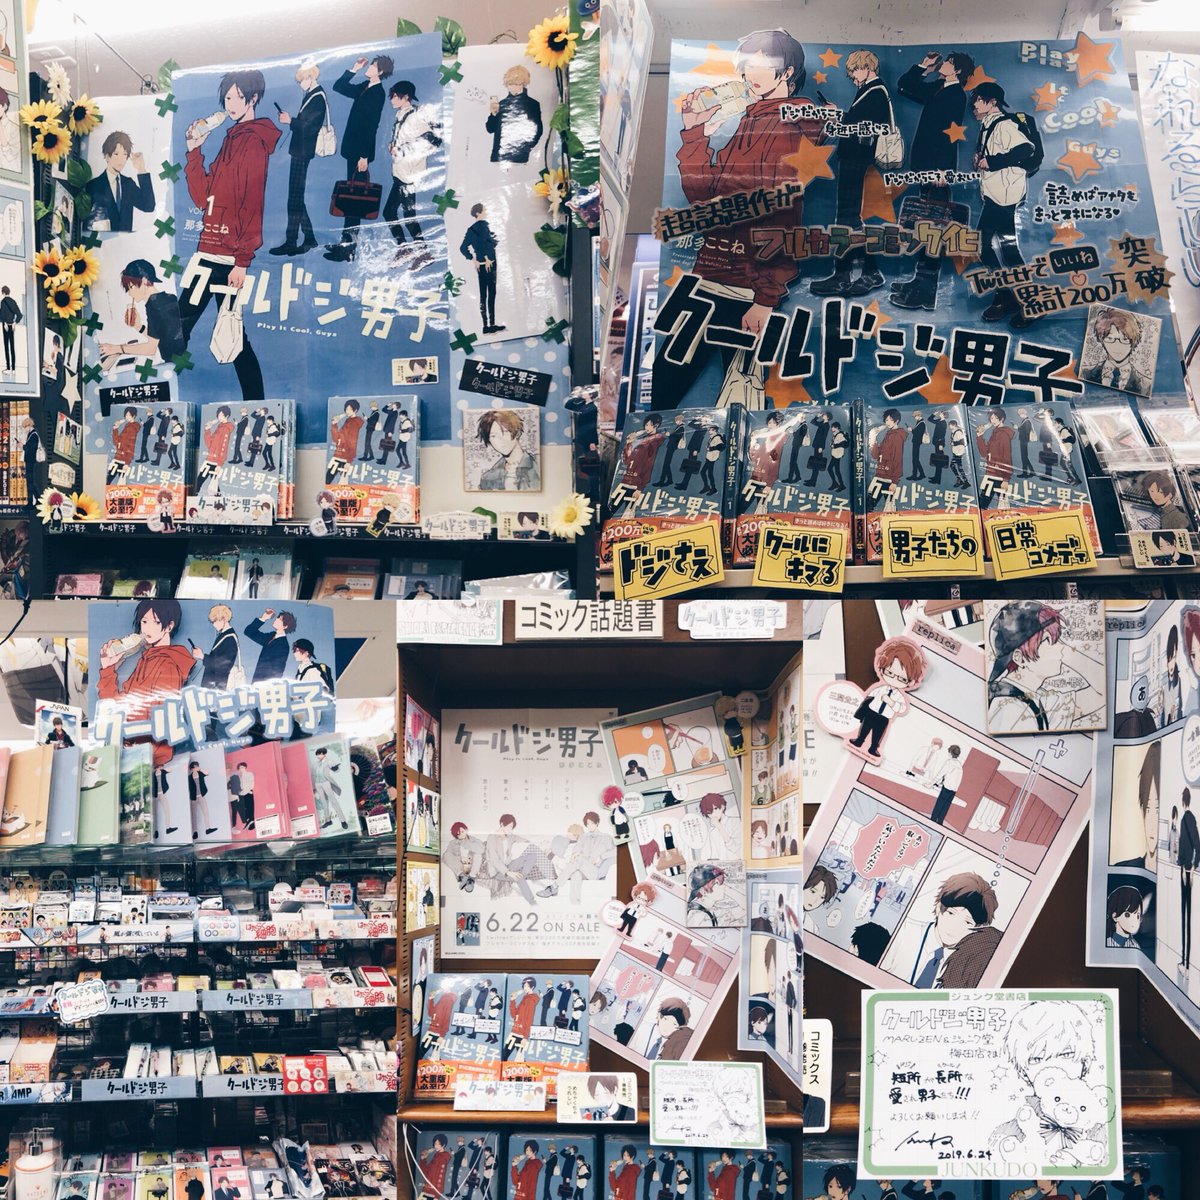 今日は大阪・京都の書店回りをしました！お忙しい中ありがとうございました。素敵なコーナー作っていただきとても嬉しいです…！東京も合わせて計12店舗に色紙置いていただきました！お立ち寄りの際は探してみてください〜大阪のジュンク堂さんで… 